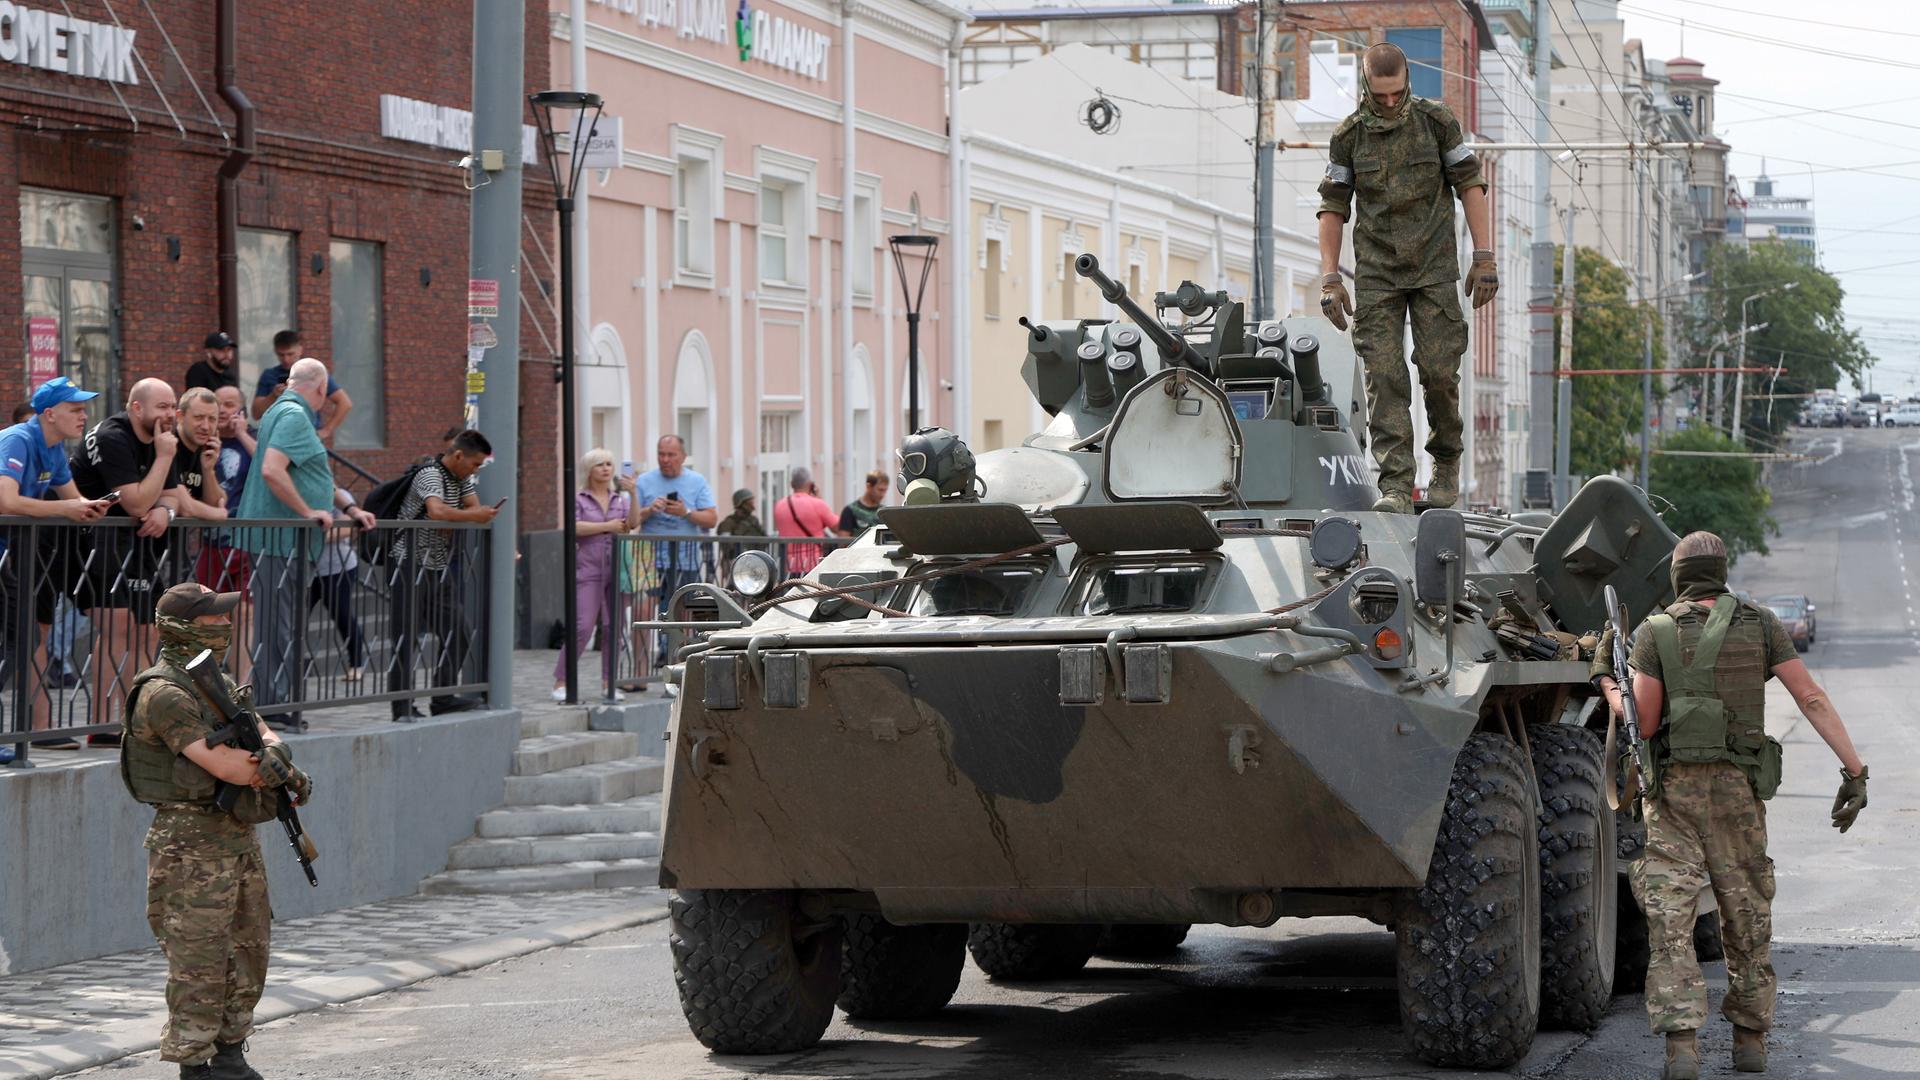 Drei Männer in Militärkleidung sind um einen Panzer zu sehen, am Rand stehen Zivilisten.